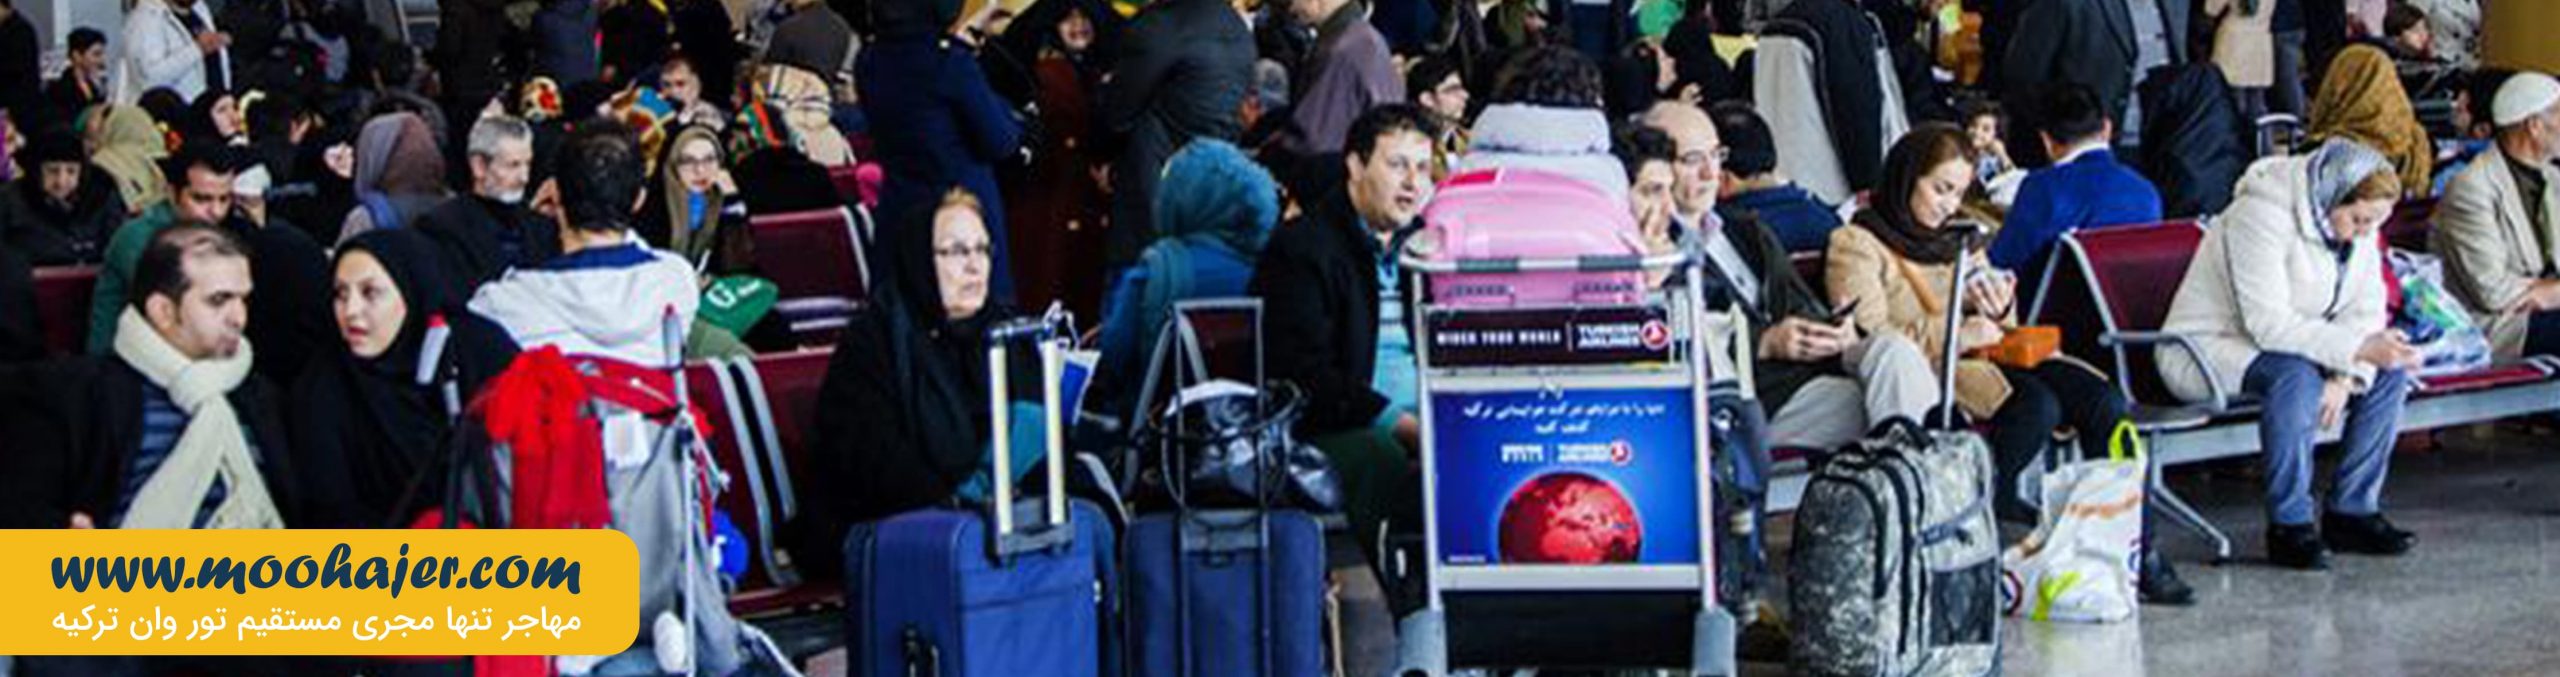 قوانین و مقررات گمرکی کالای همراه مسافر | مهاجر سیر ایرانیان